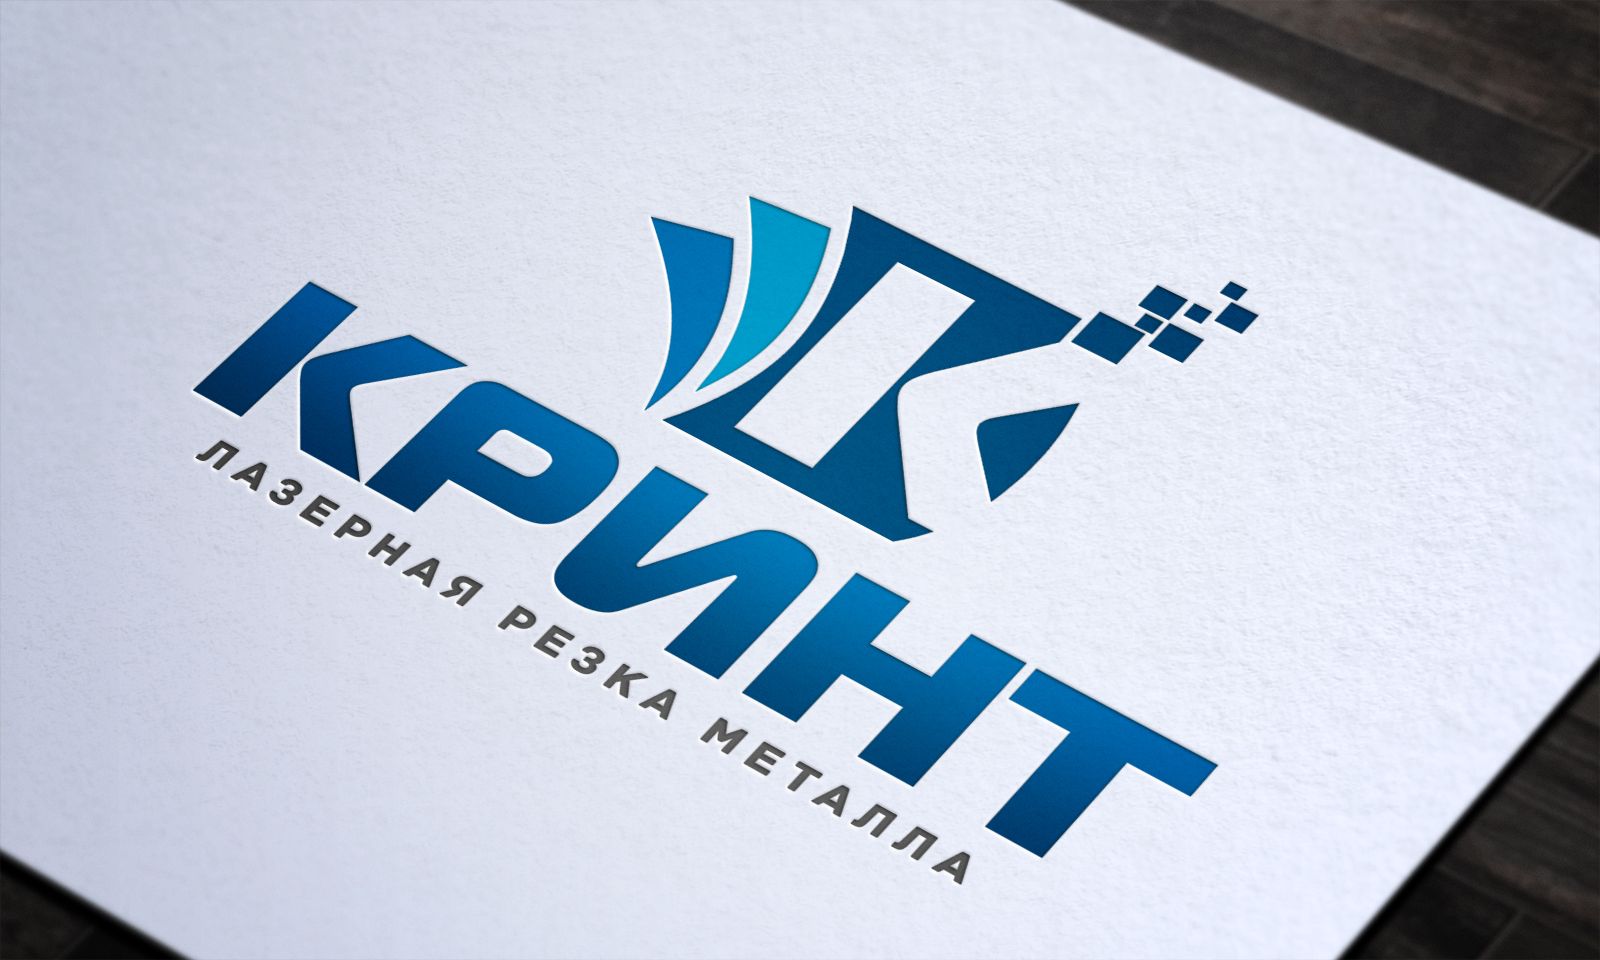 Логотип + фирменный стиль для компании Кринт - дизайнер Splayd